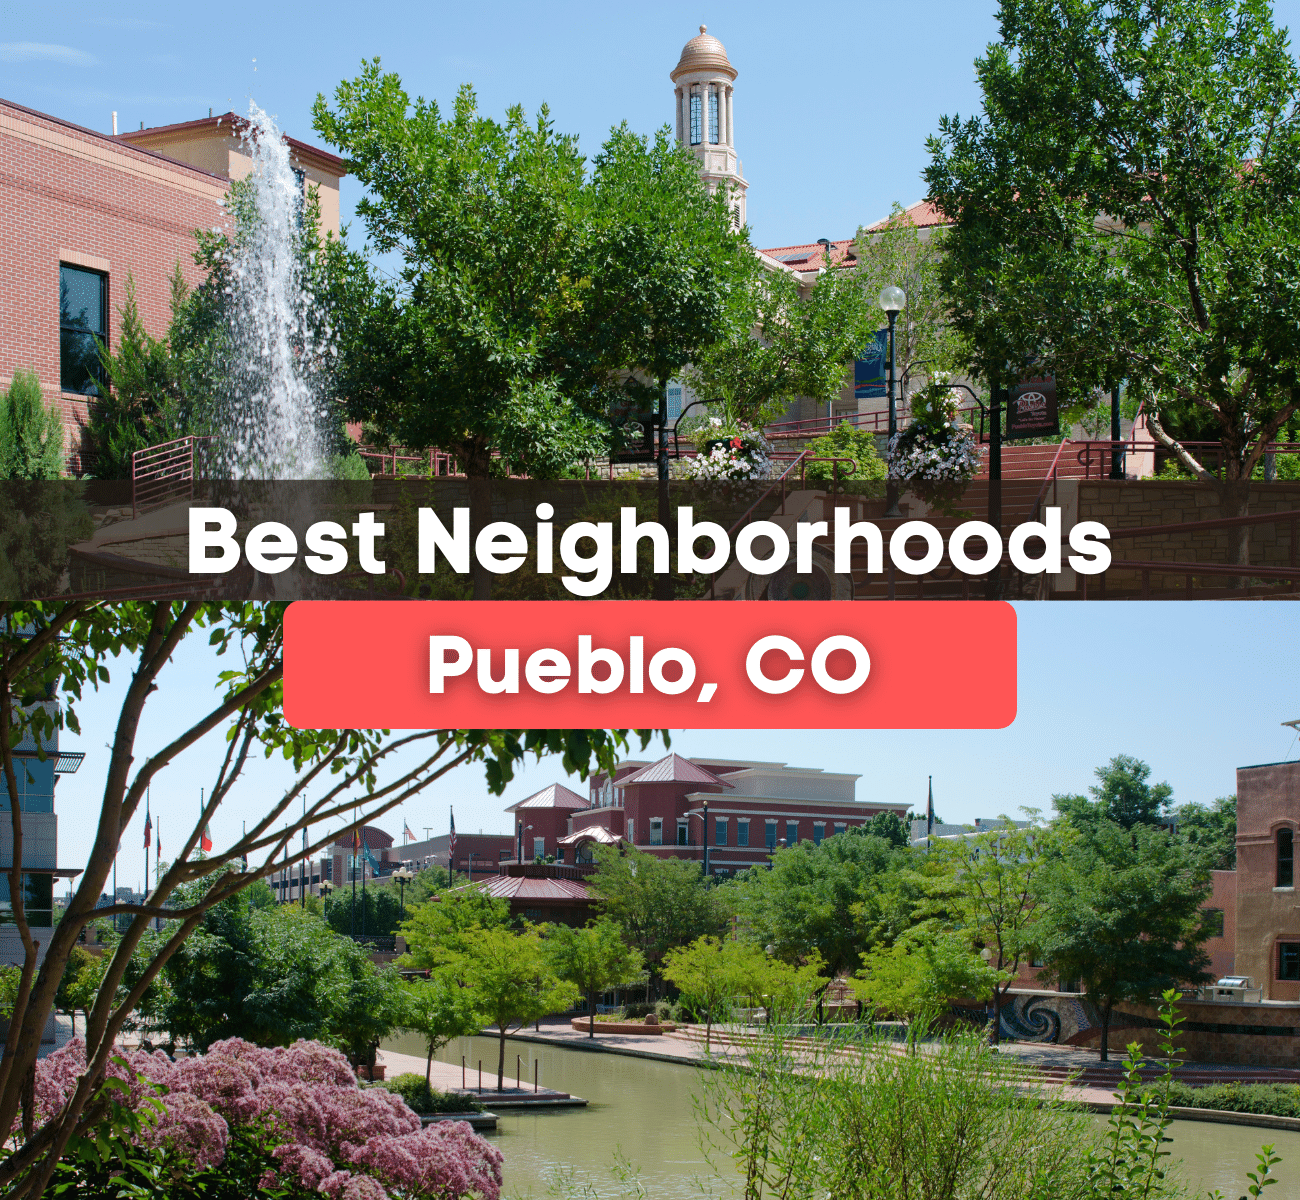 Best Neighborhoods in Pueblo Colorado - Best places to live in Pueblo